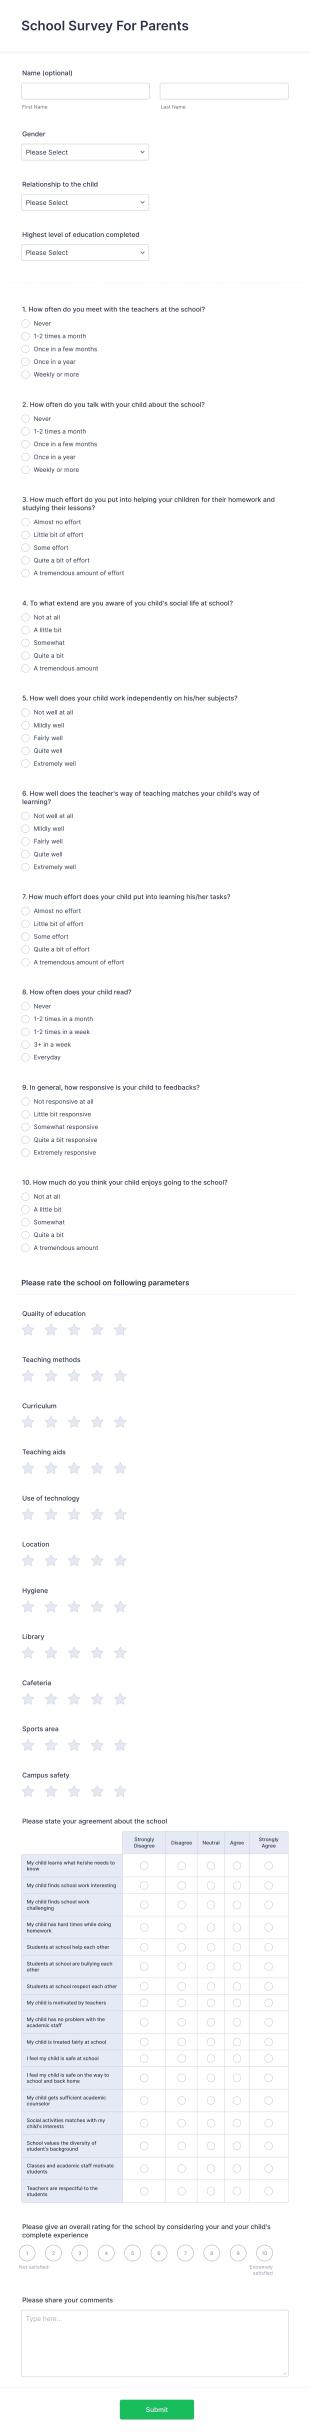 School Survey For Parents Form Template